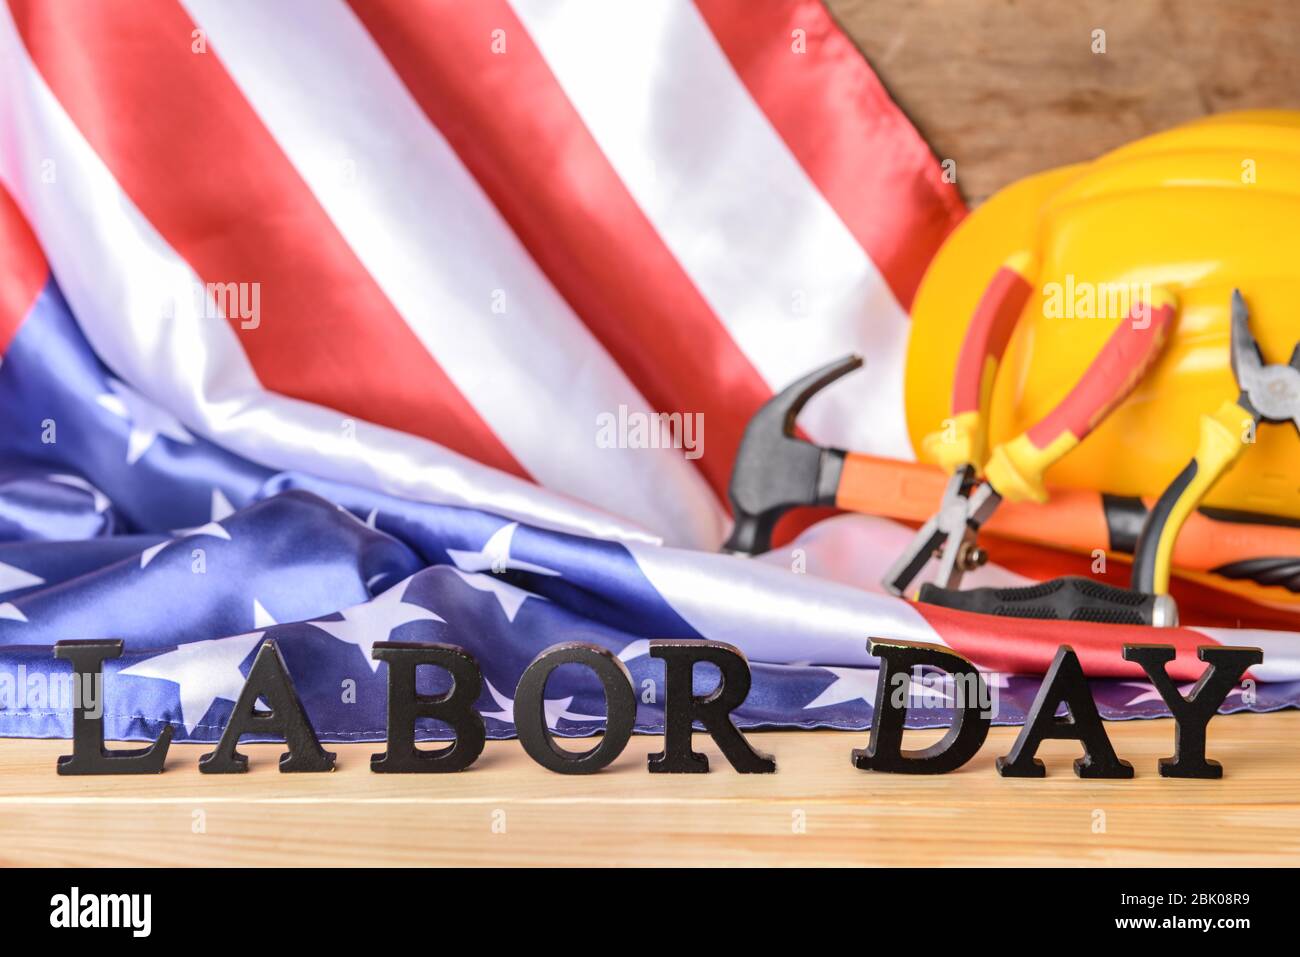 USA-Flagge, hardhat, Werkzeuge und Text TAG DER ARBEIT auf hölzernen Tisch Stockfoto